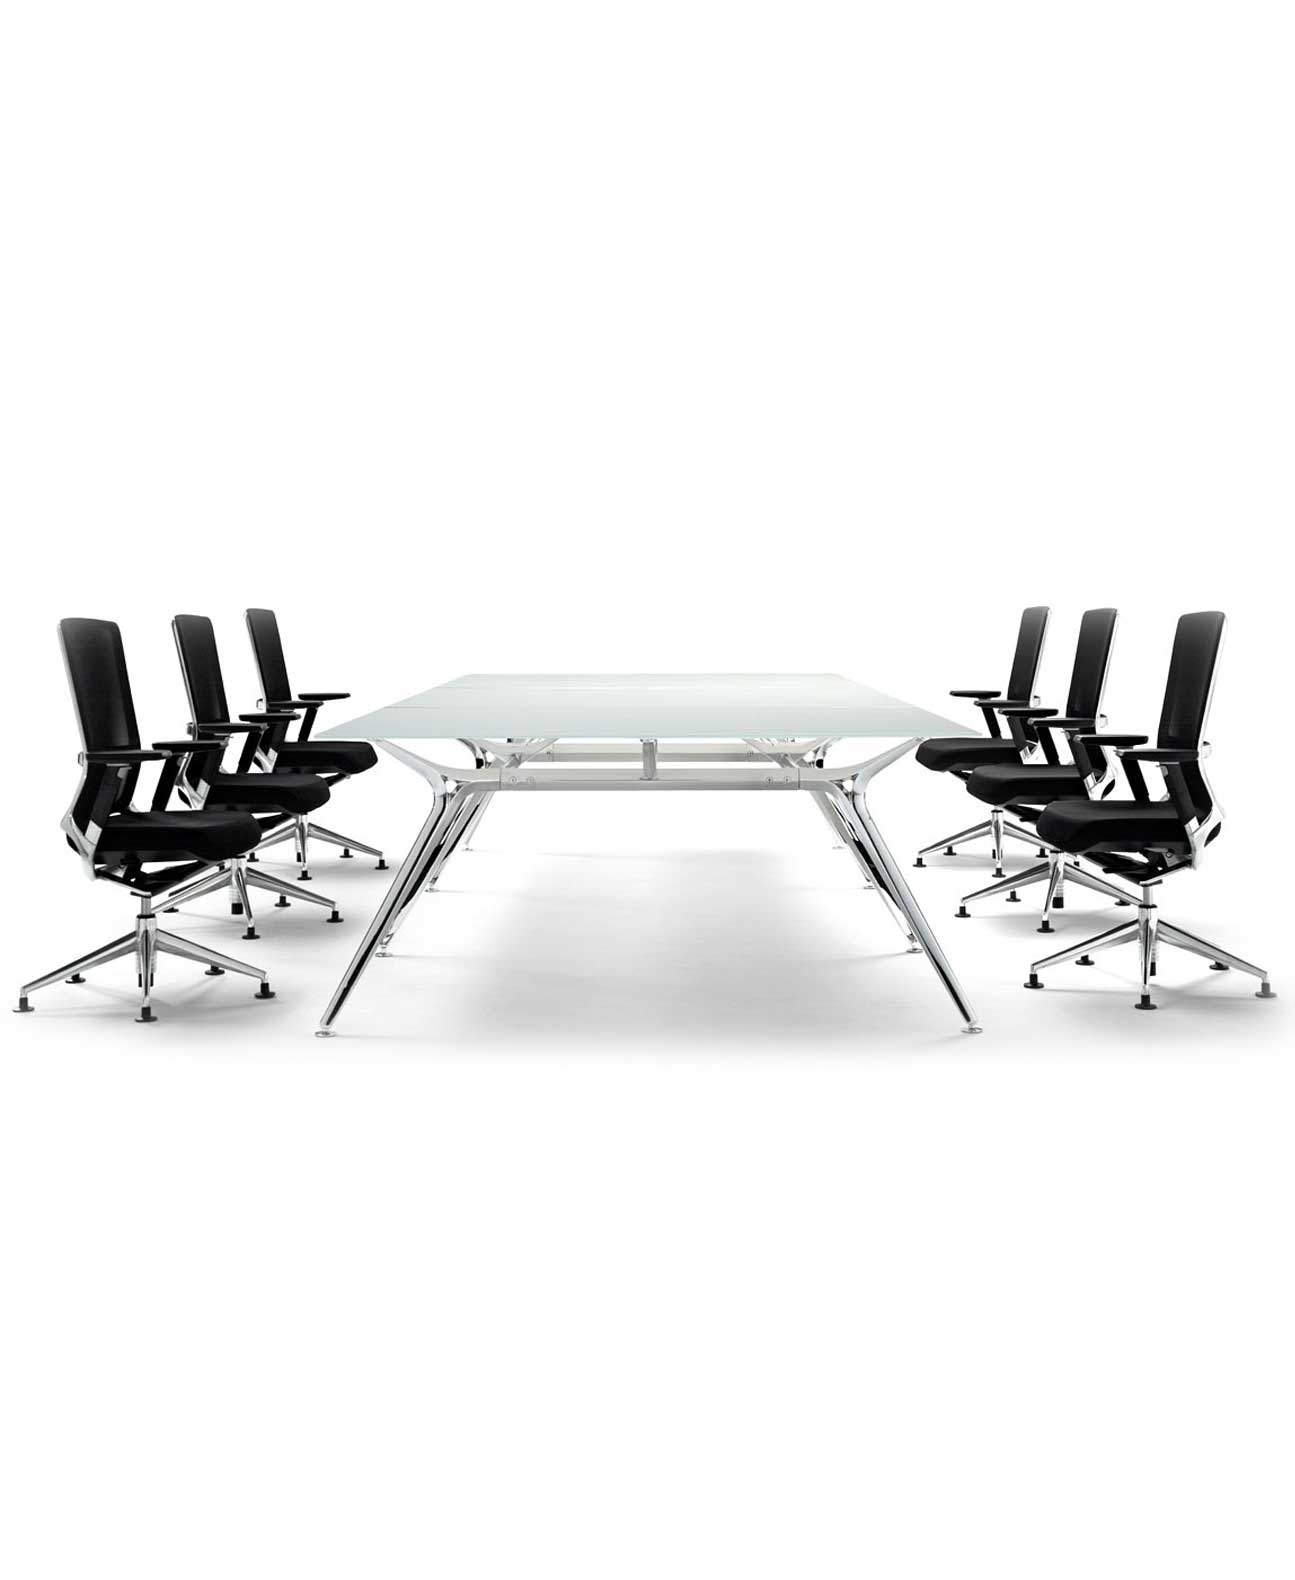 mesa de reuniones arkitek 3